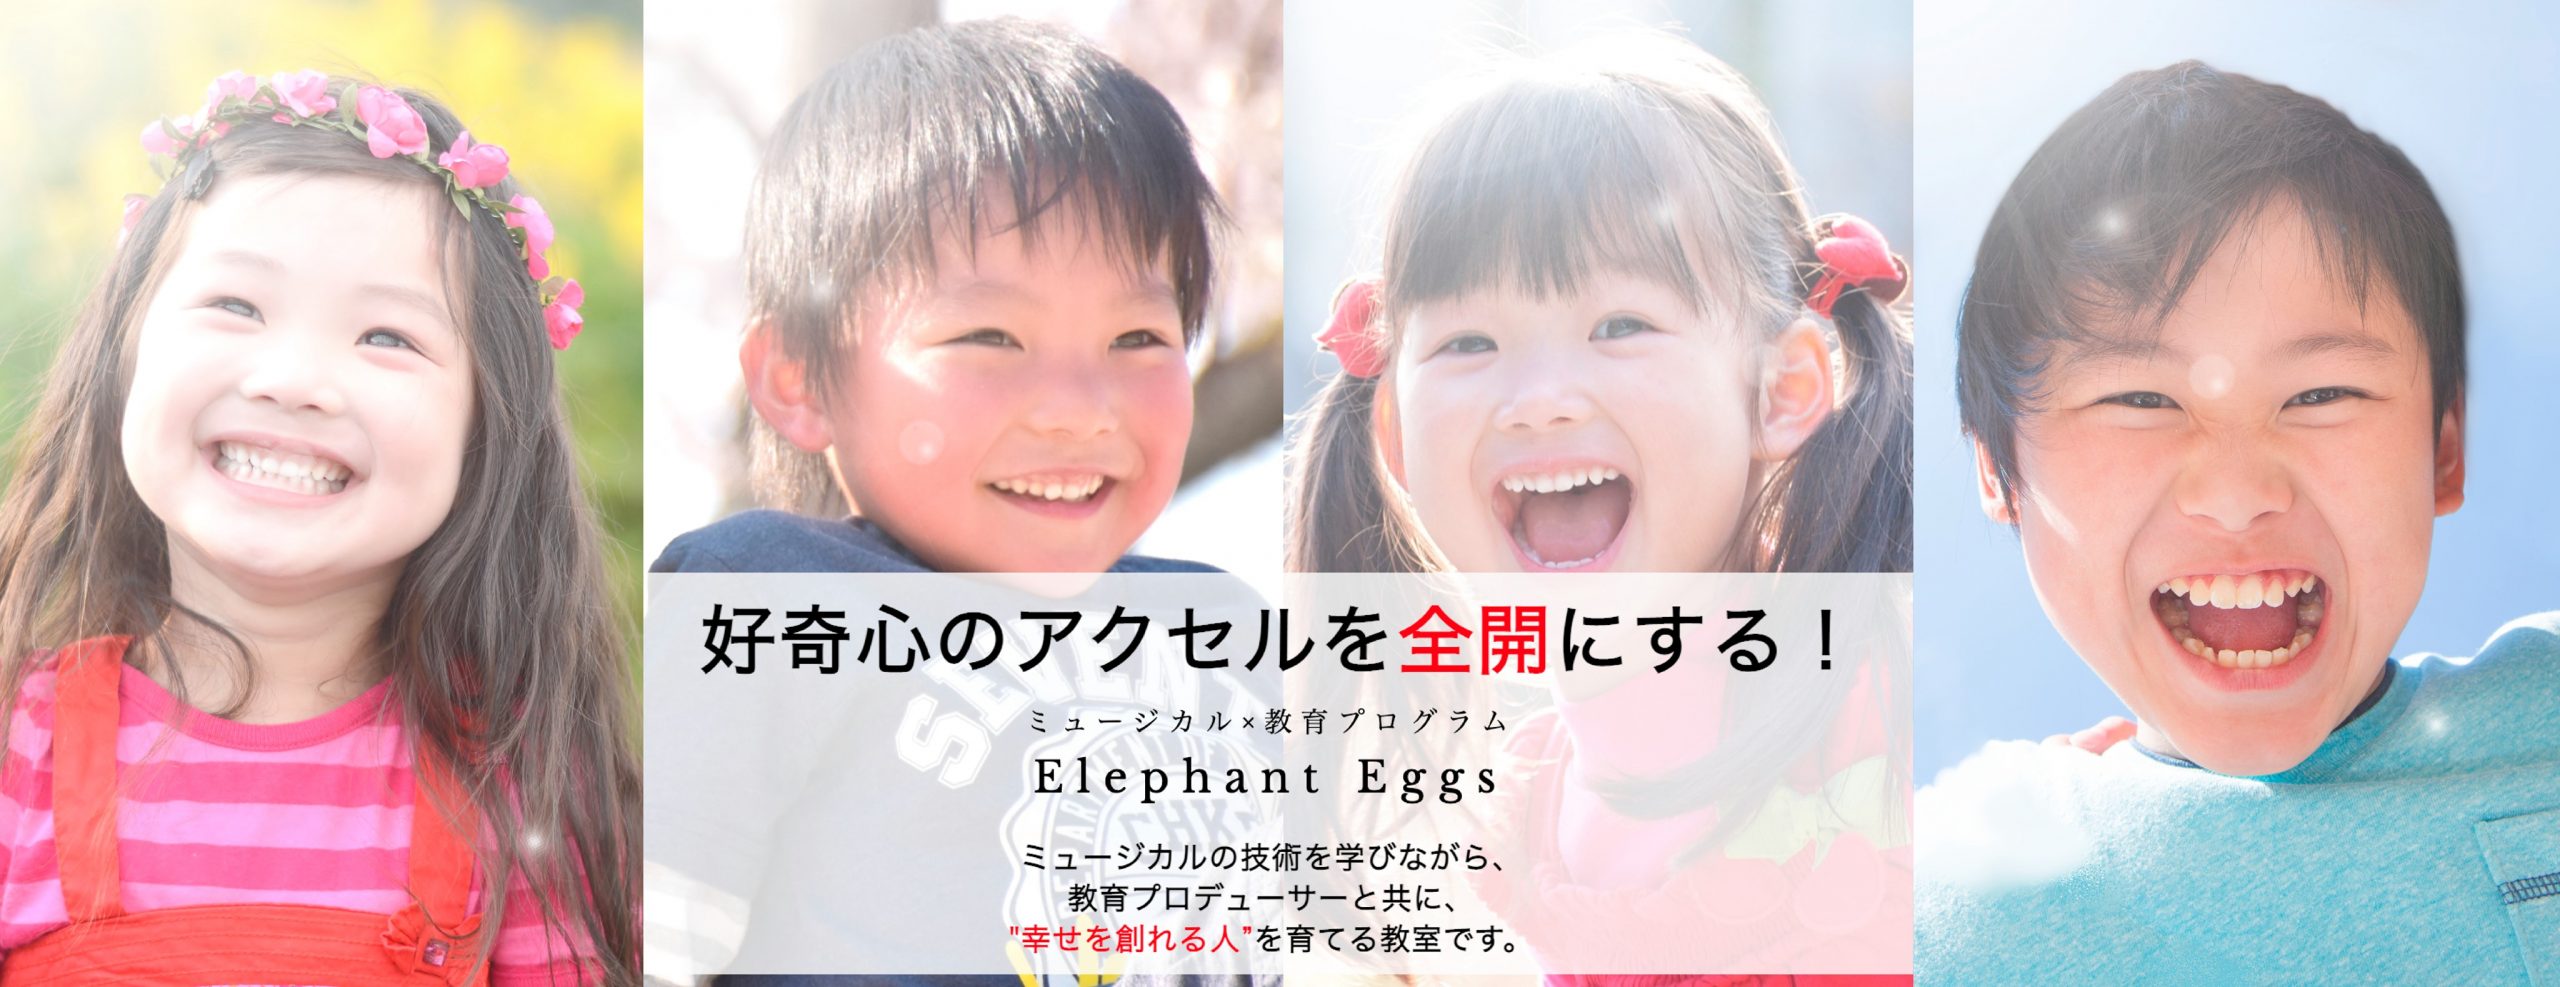 ミュージカル教室『Elephant Eggs』の雰囲気がわかる写真